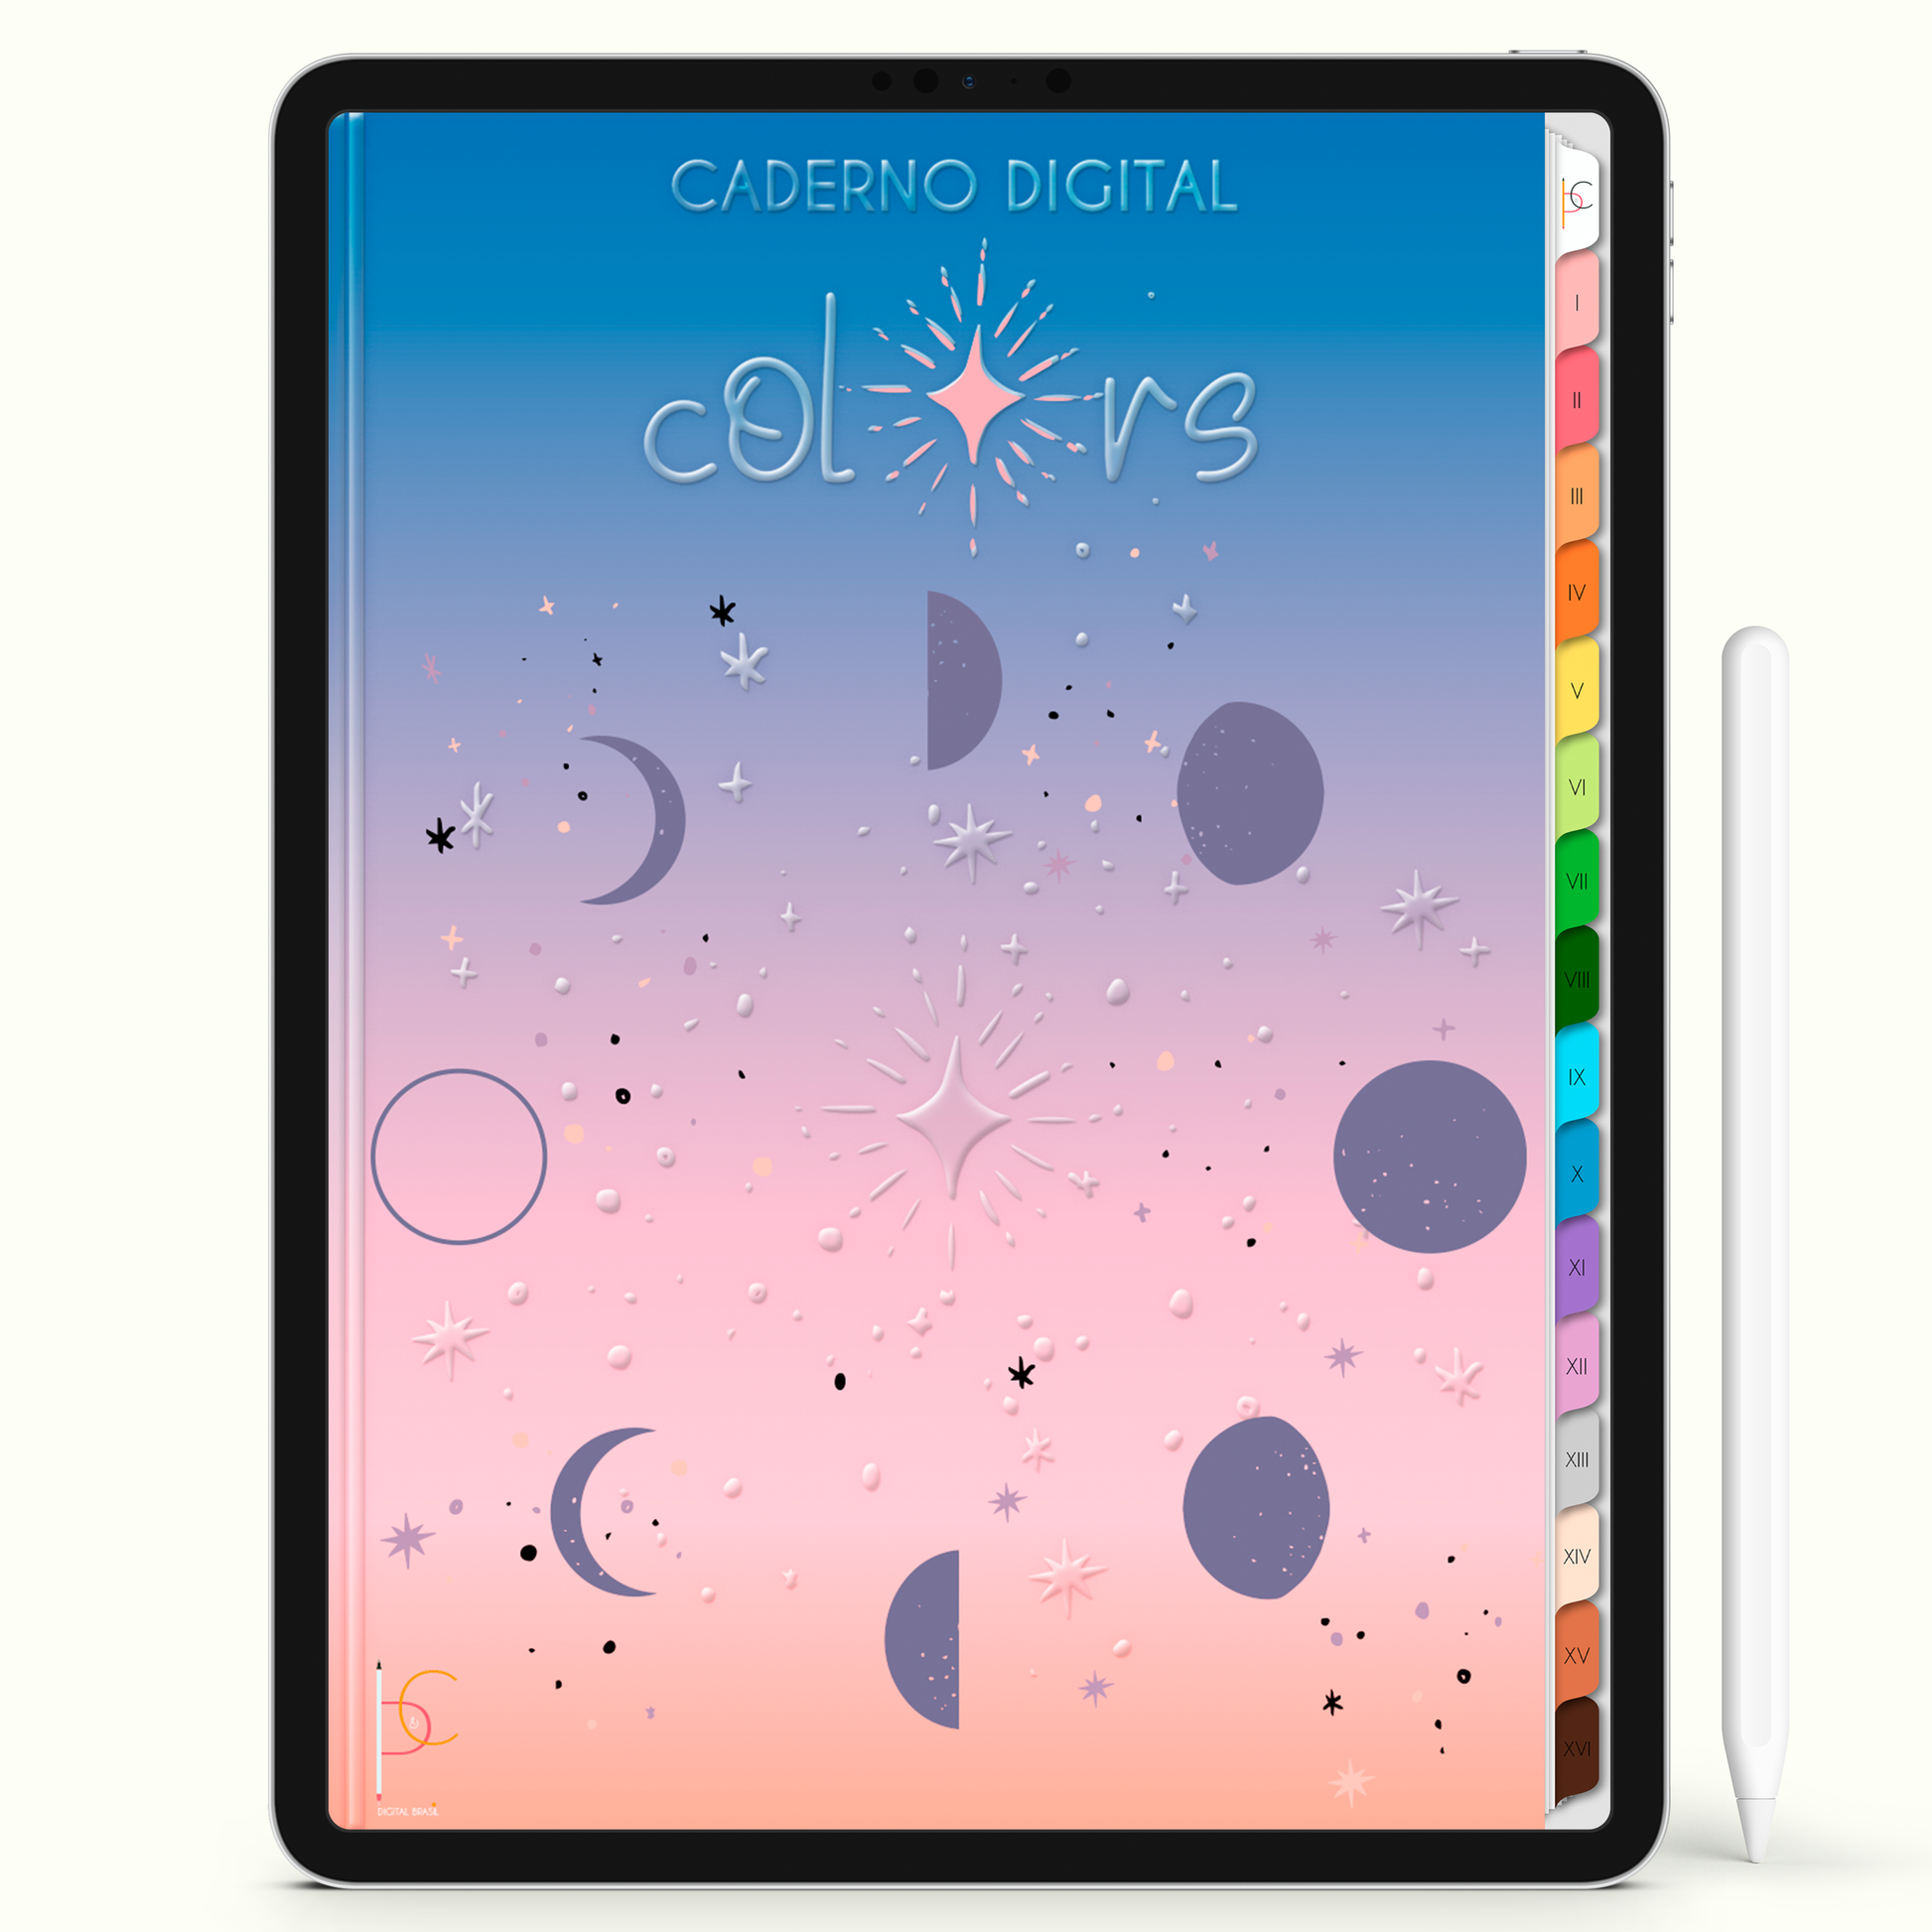 Caderno Digital Colors Fases da Lua e da Vida 16 Matérias • iPad Tablet Android • Download instantâneo • Sustentável